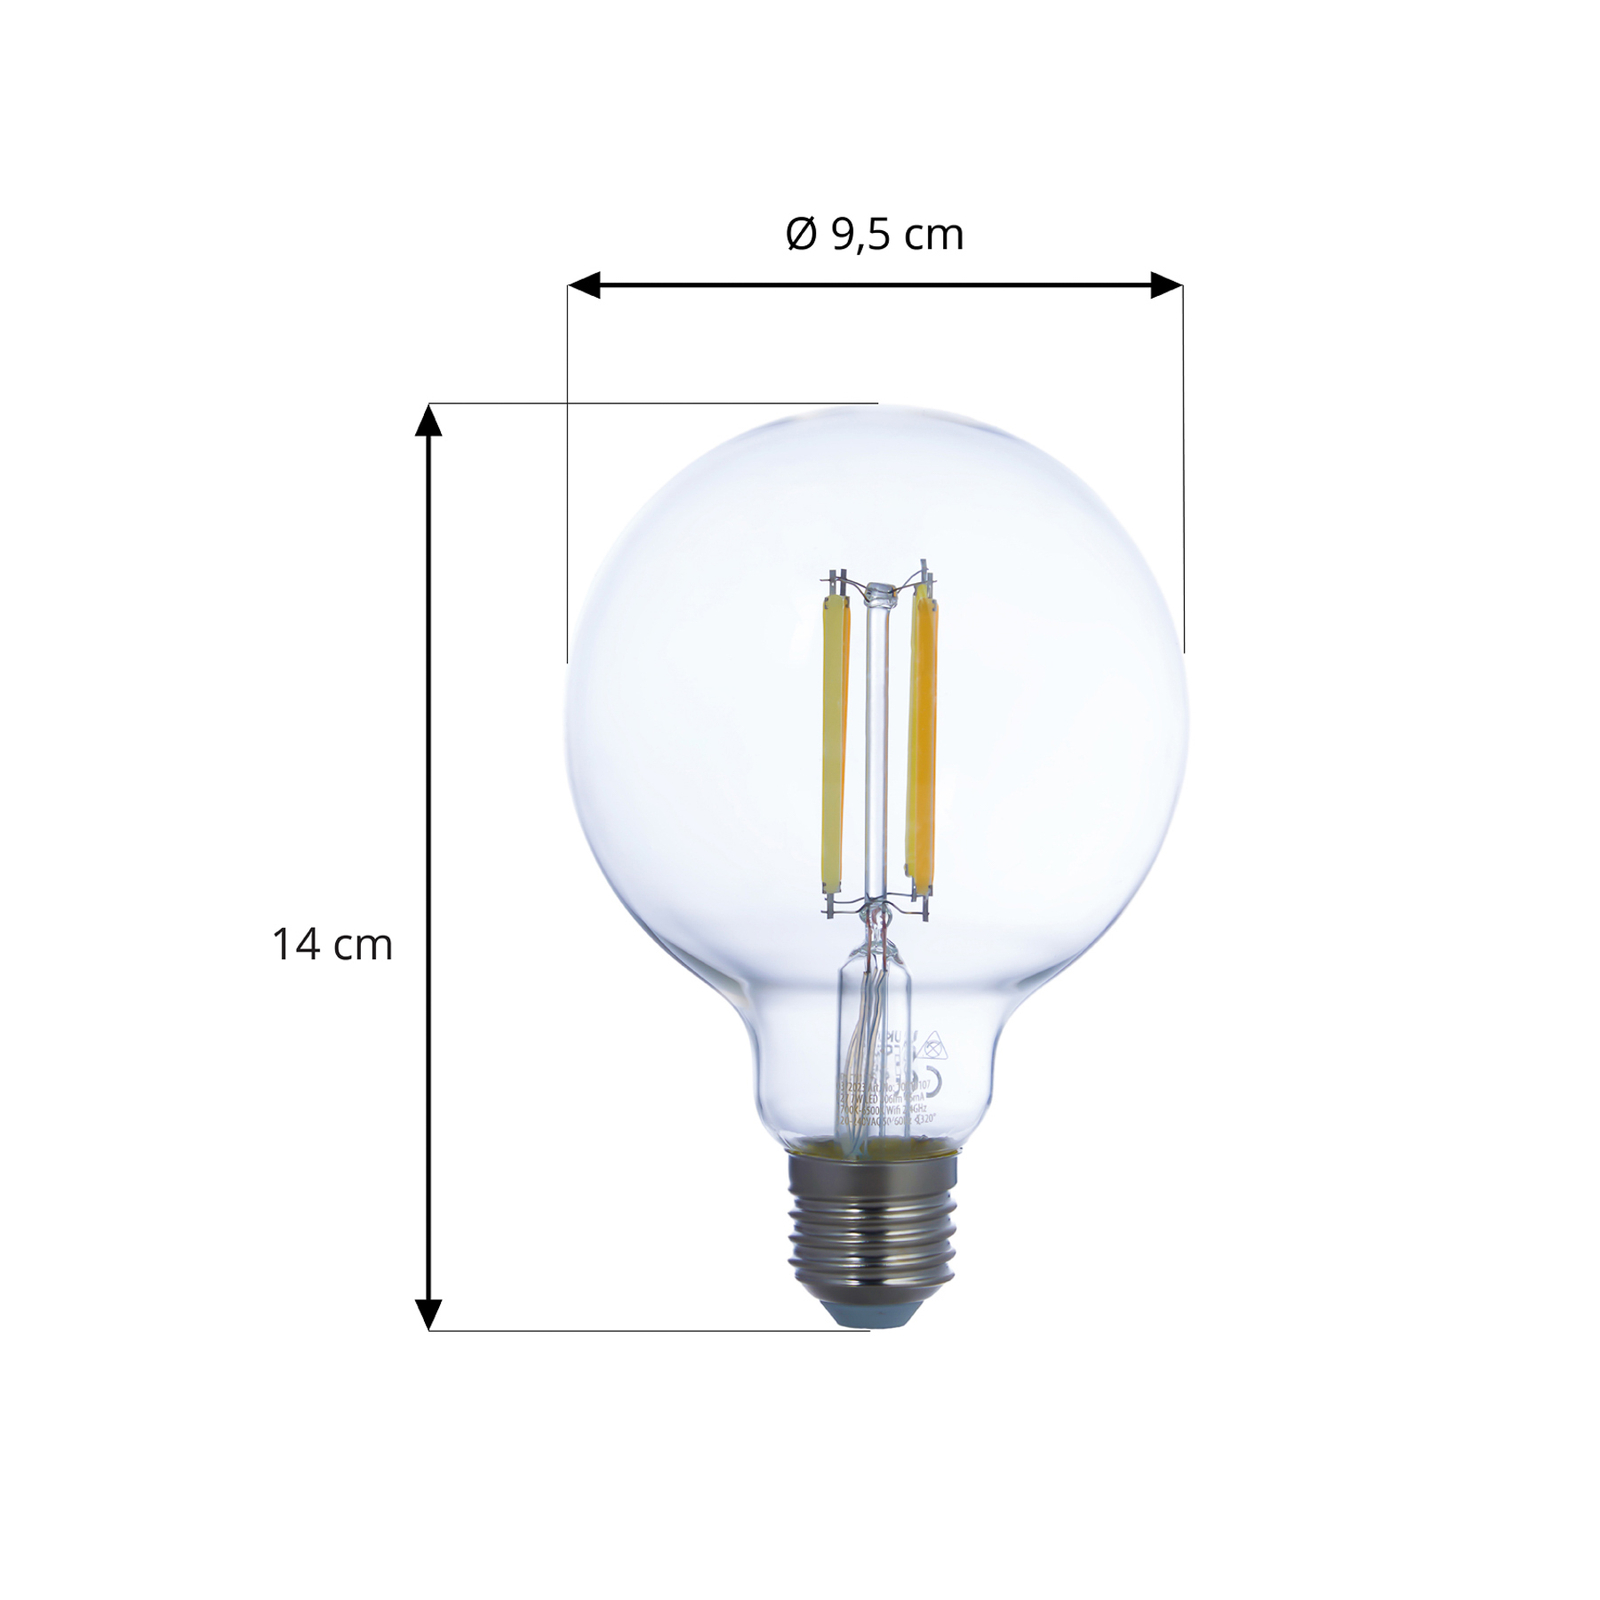 LUUMR Smart LED, komplekt 2, hõõgniit, E27, G95, 7W, läbipaistev, Tuya